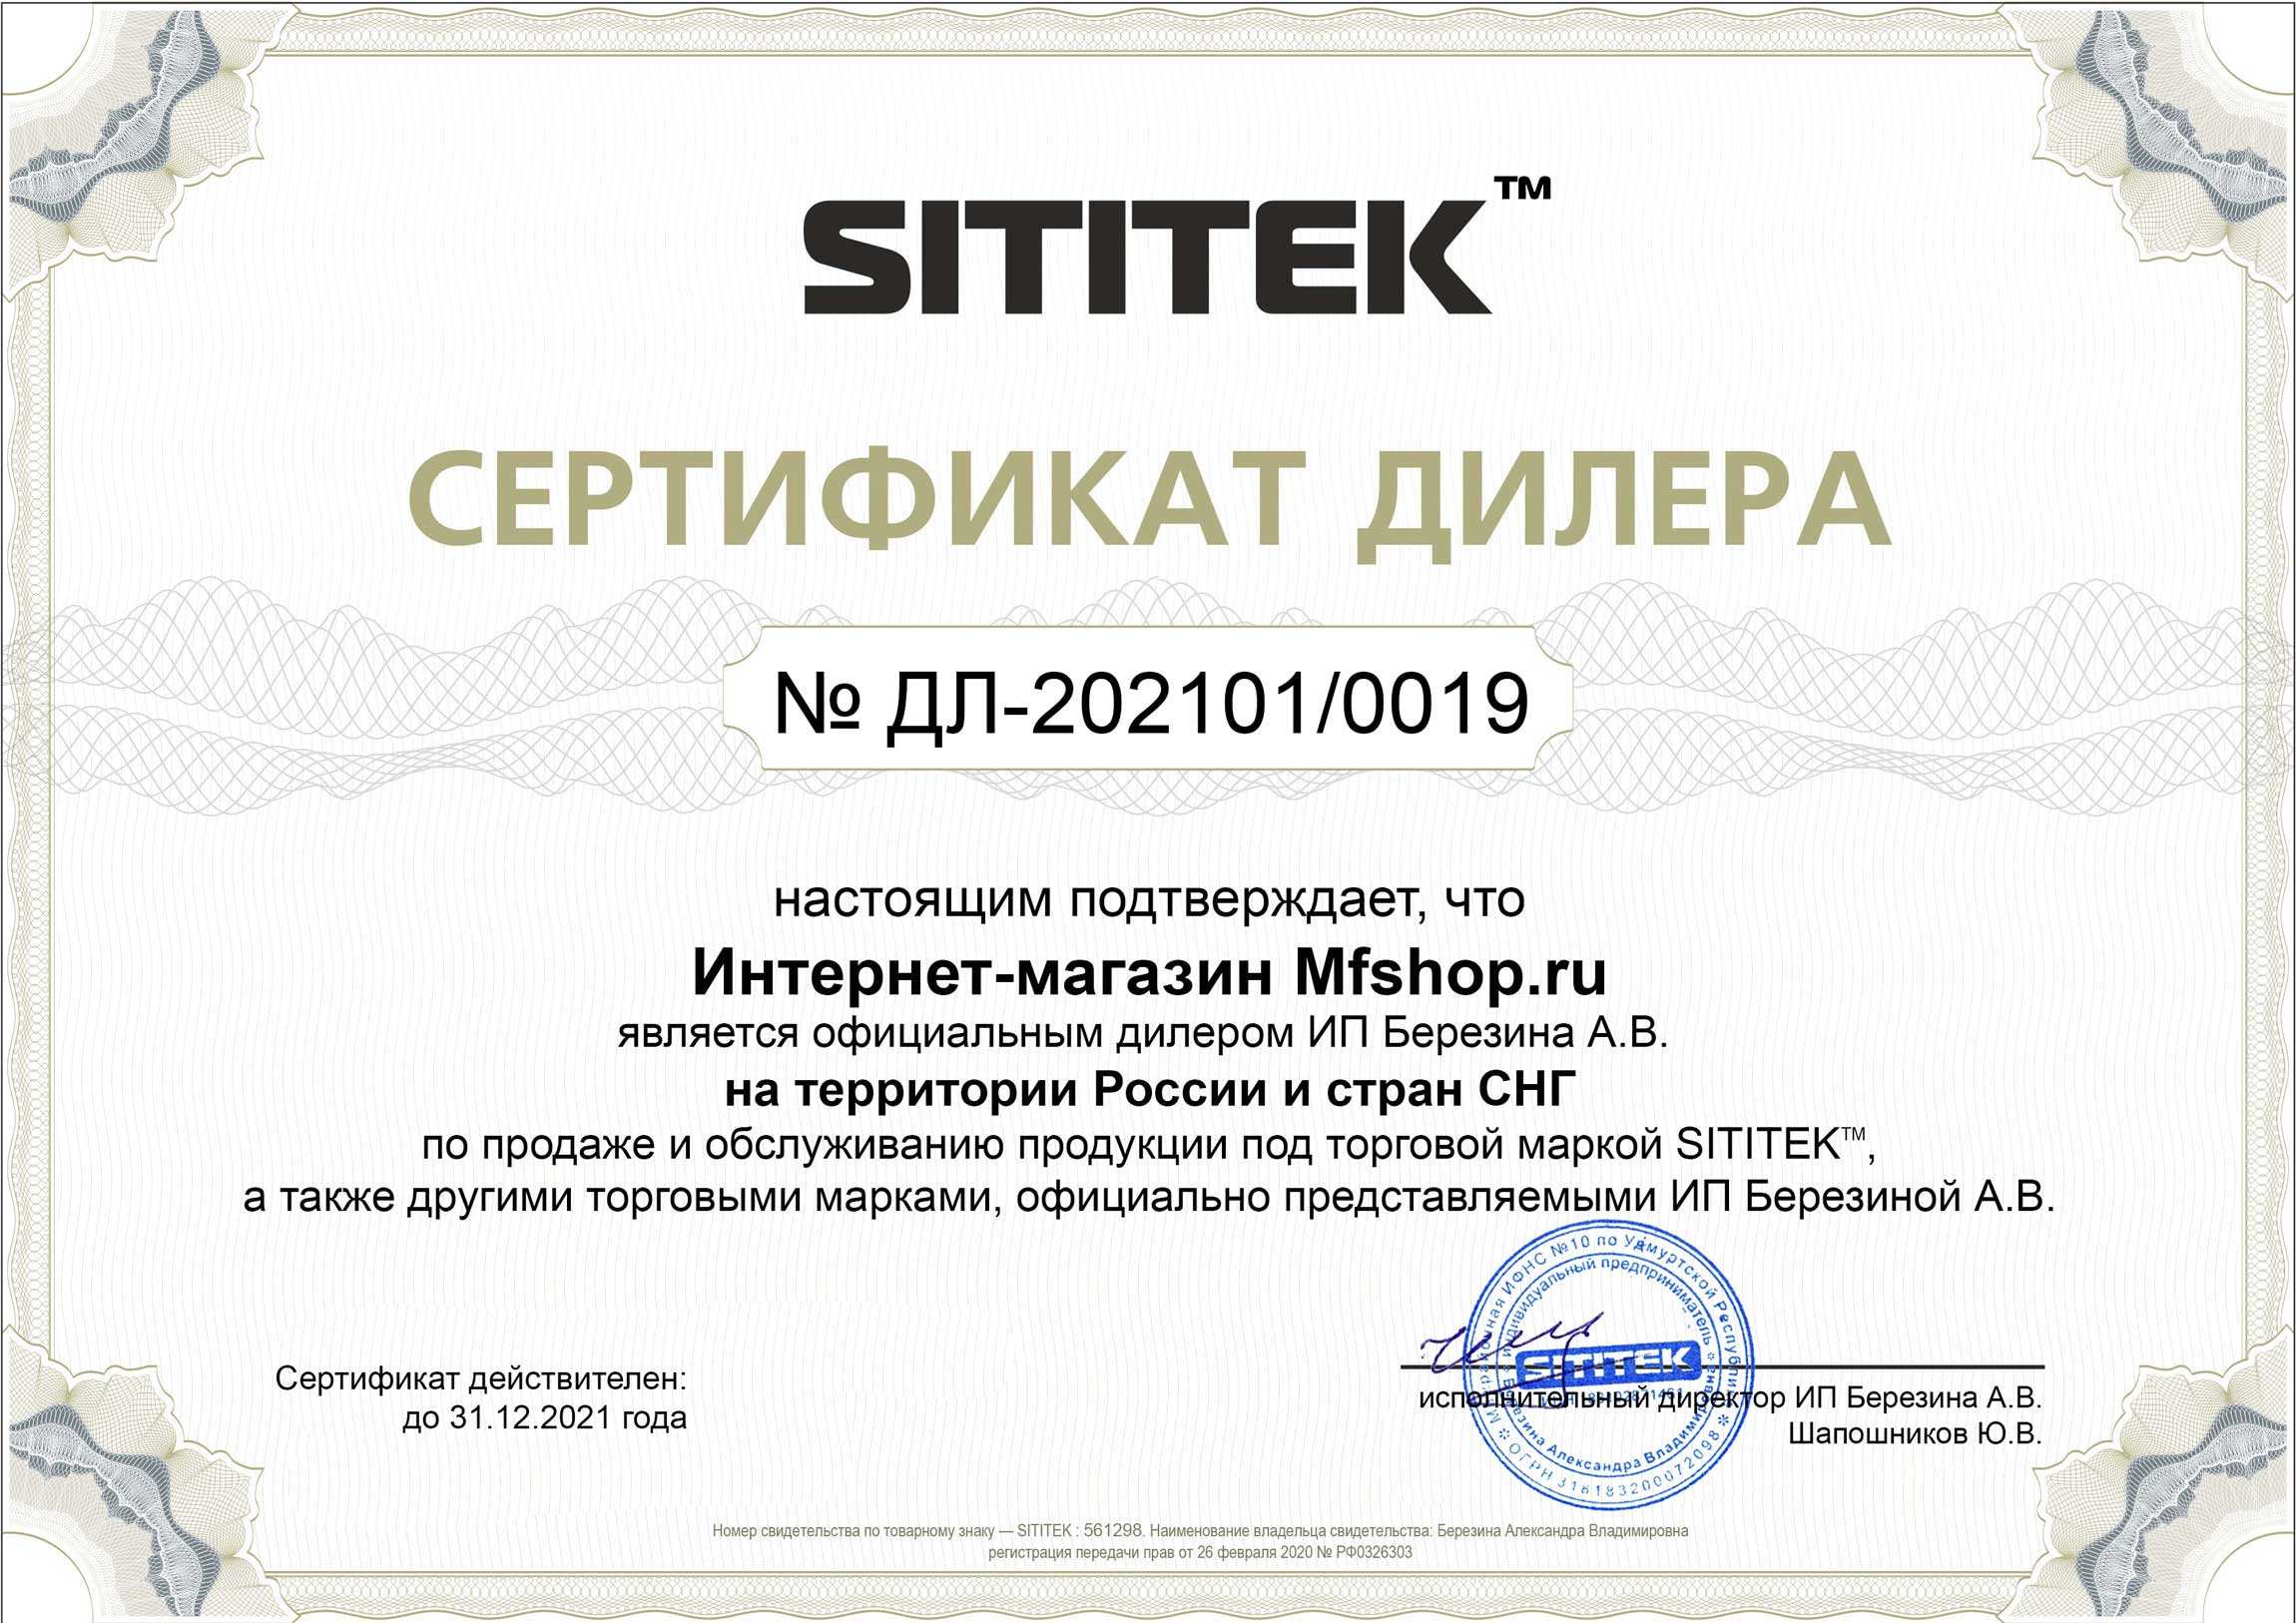 Сертификат дилера на право реализации продукции компании "Сититек"